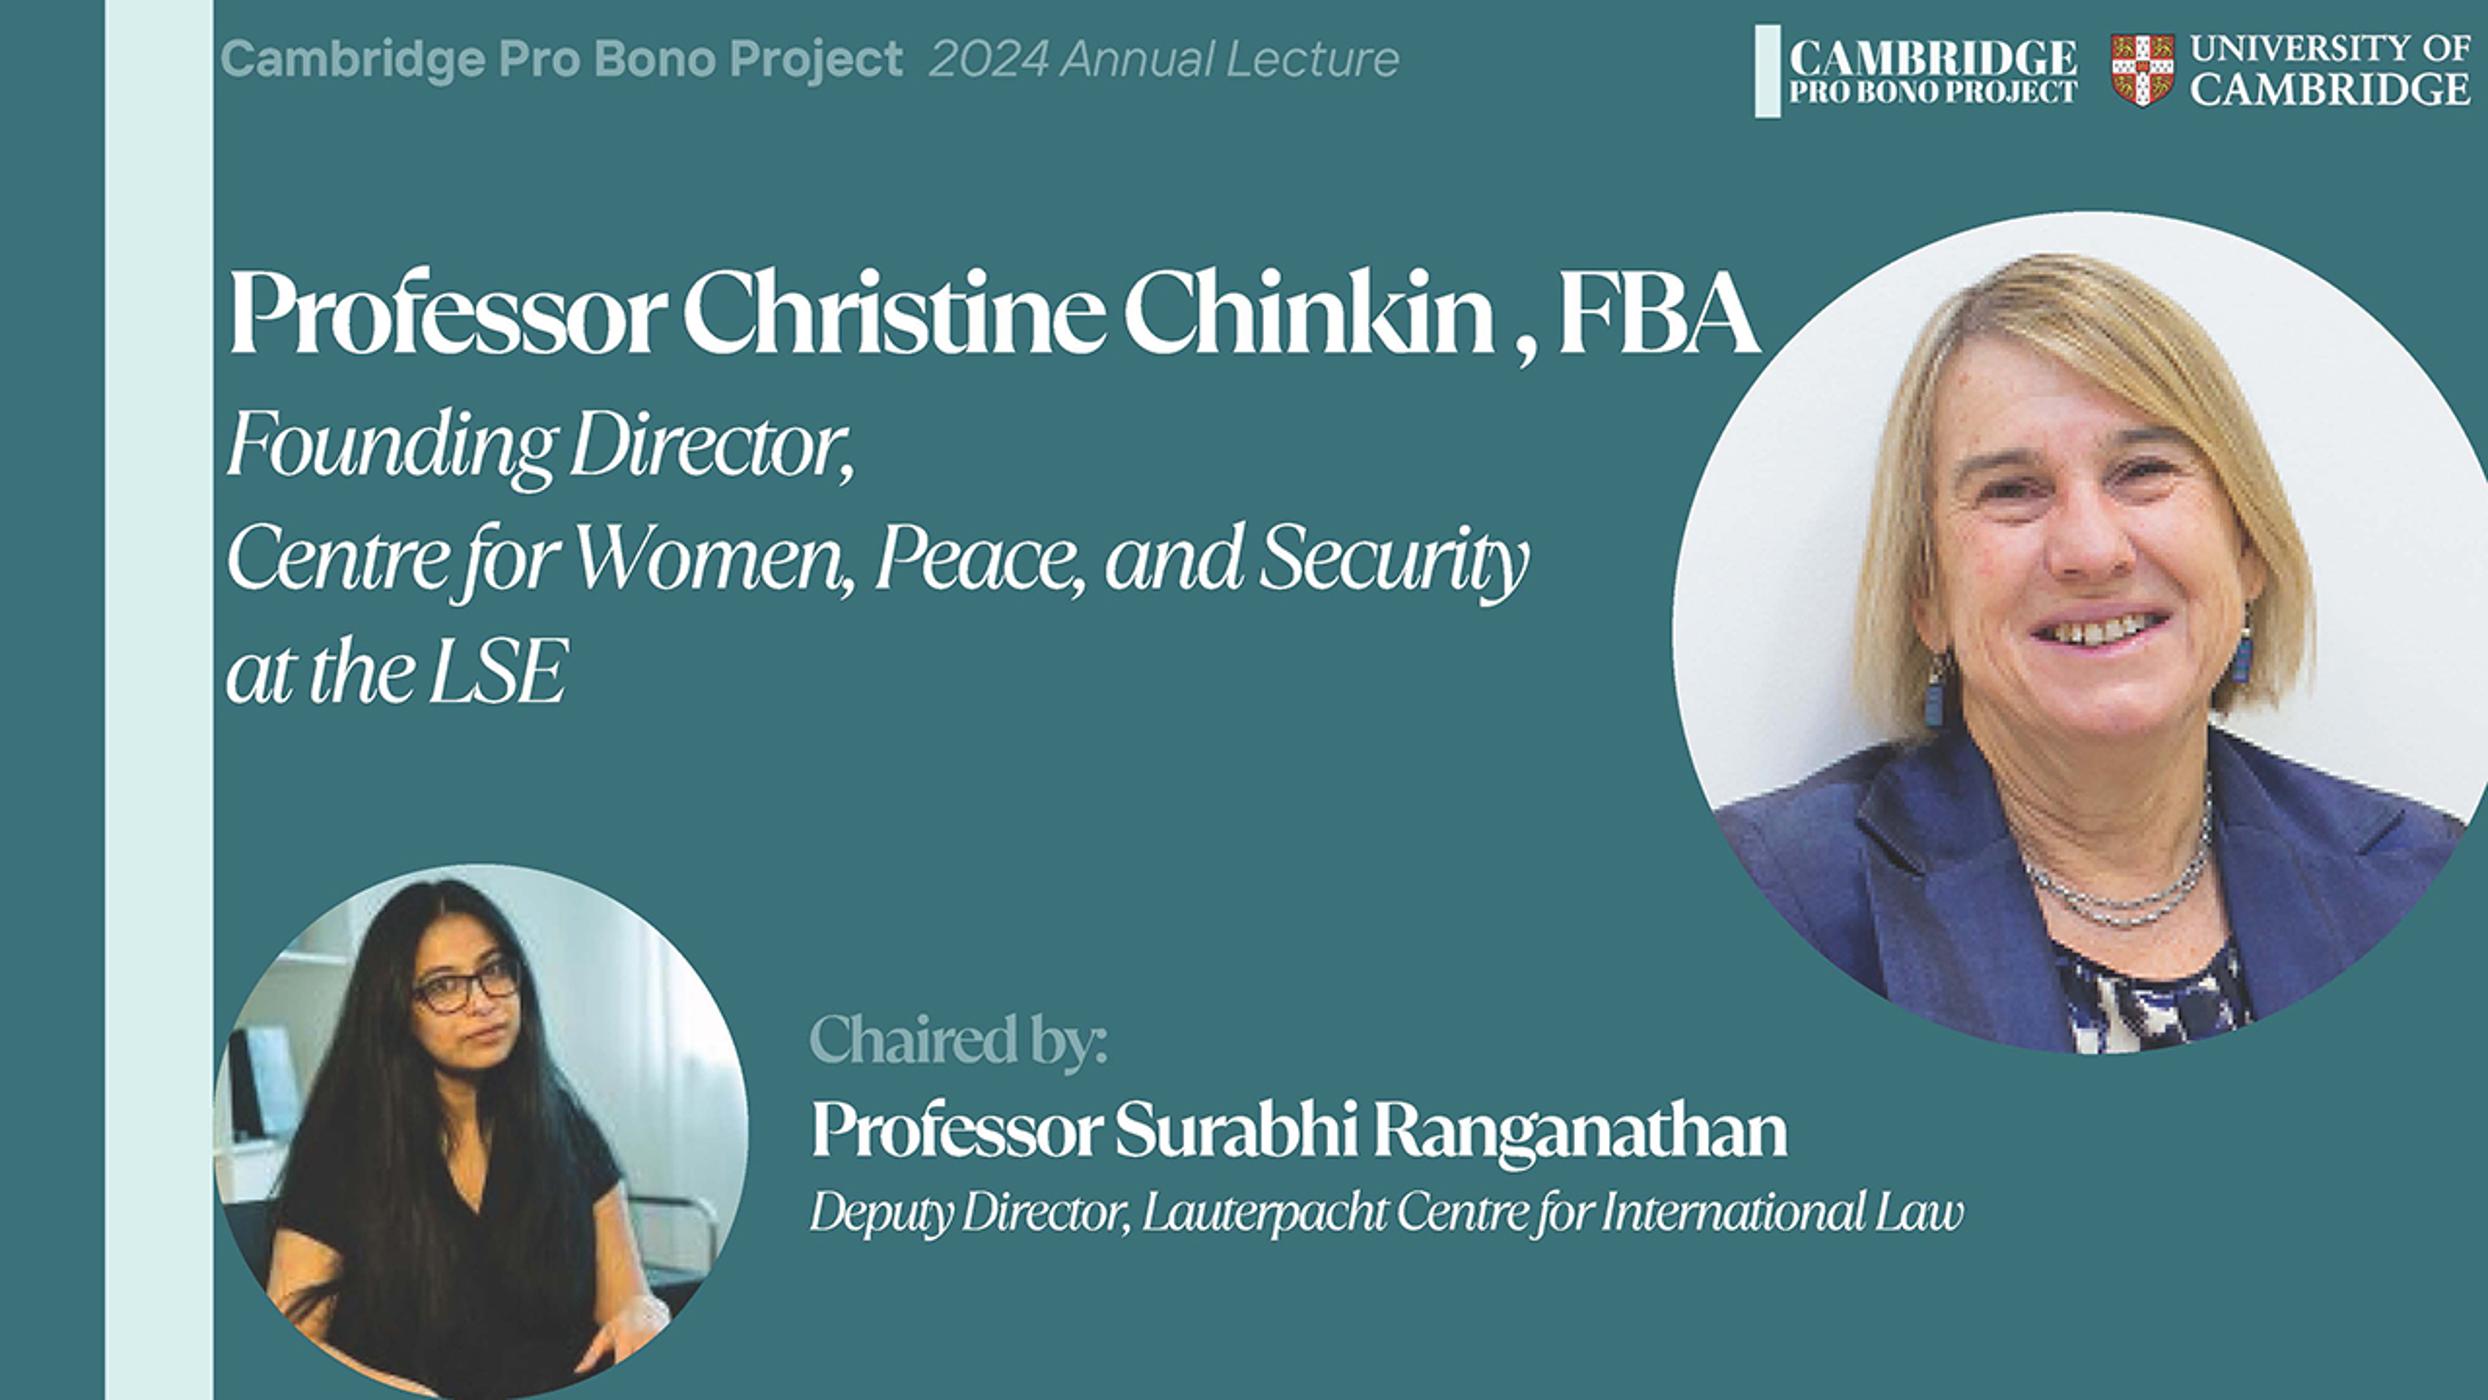 Cambridge Pro Bono Project Annual Lecture 2024: Professor Christine Chinkin